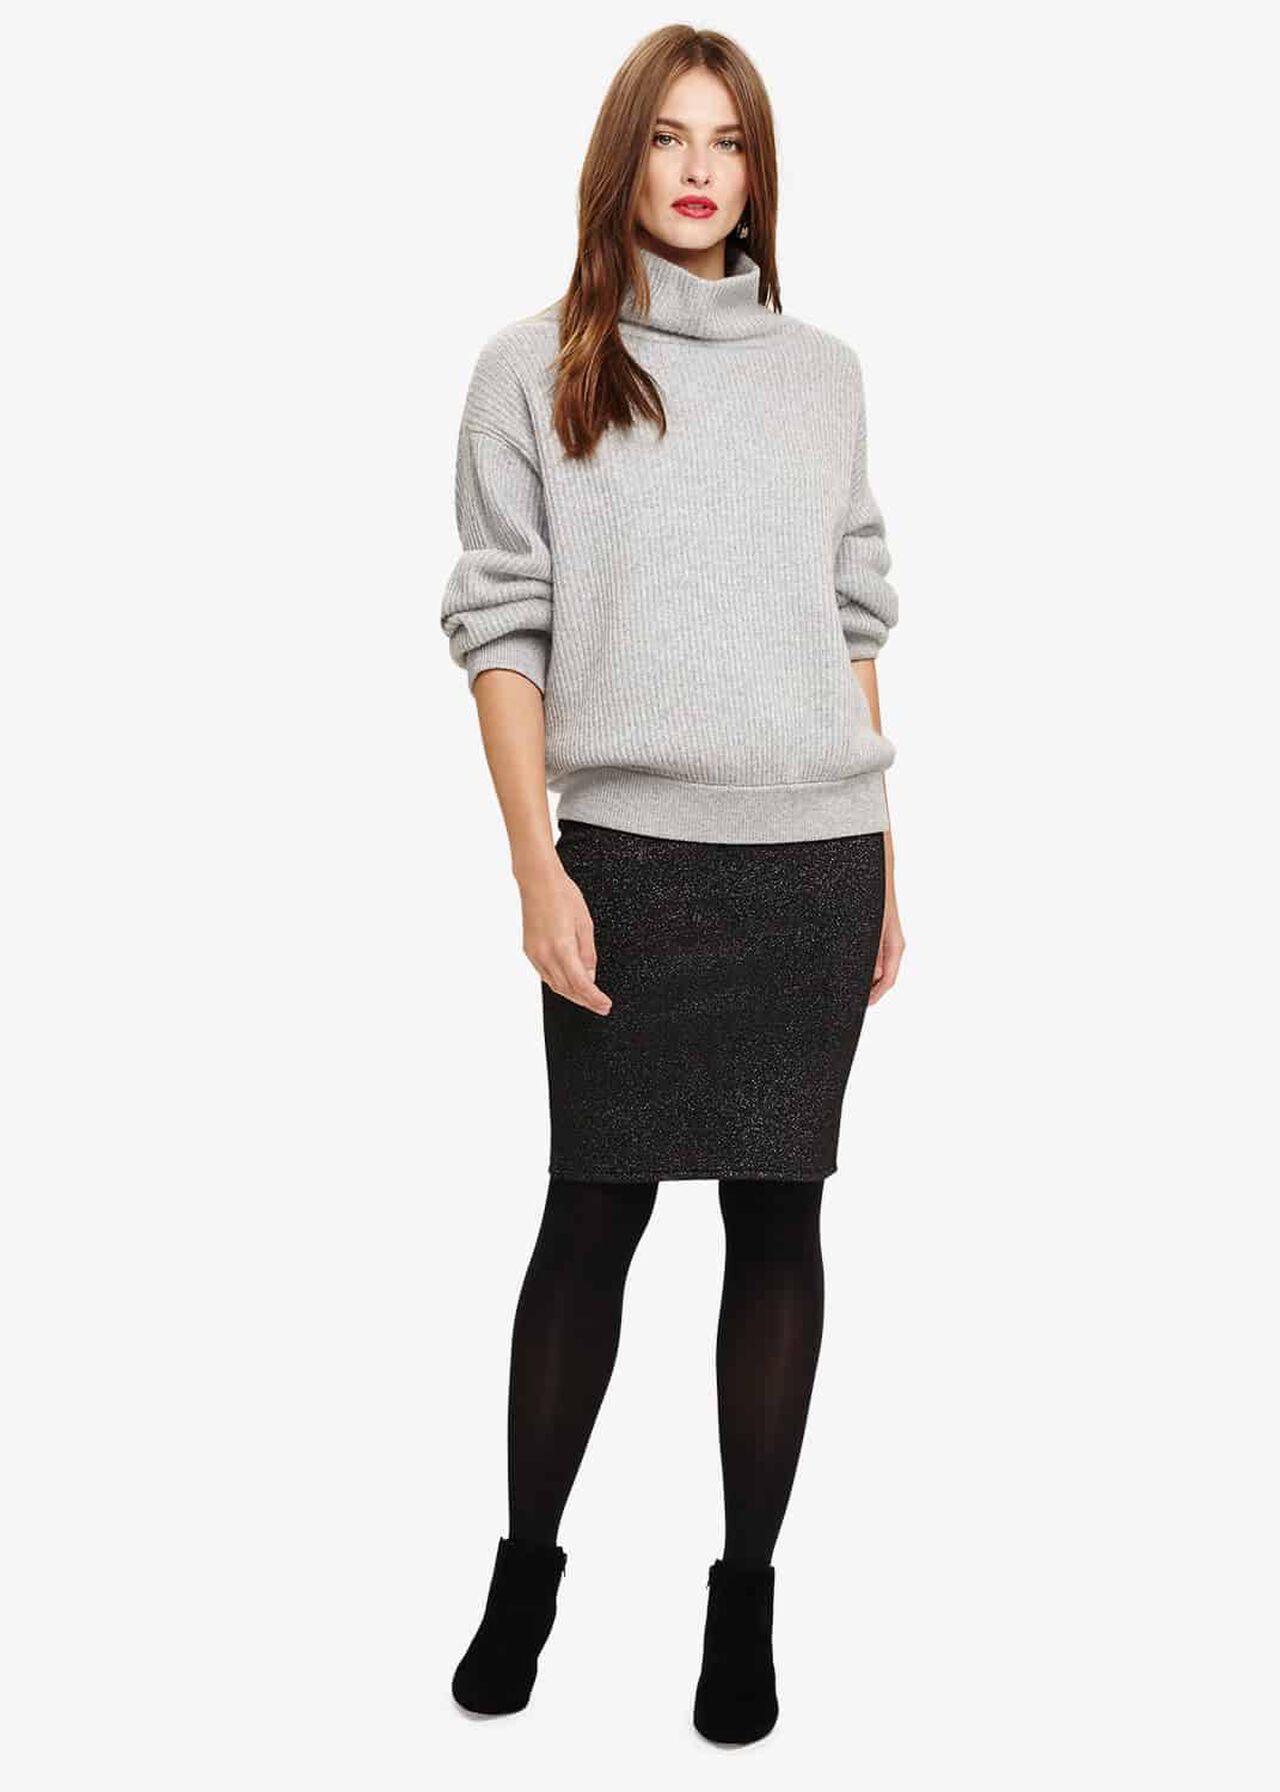 Sammie Shimmer Knitted Skirt